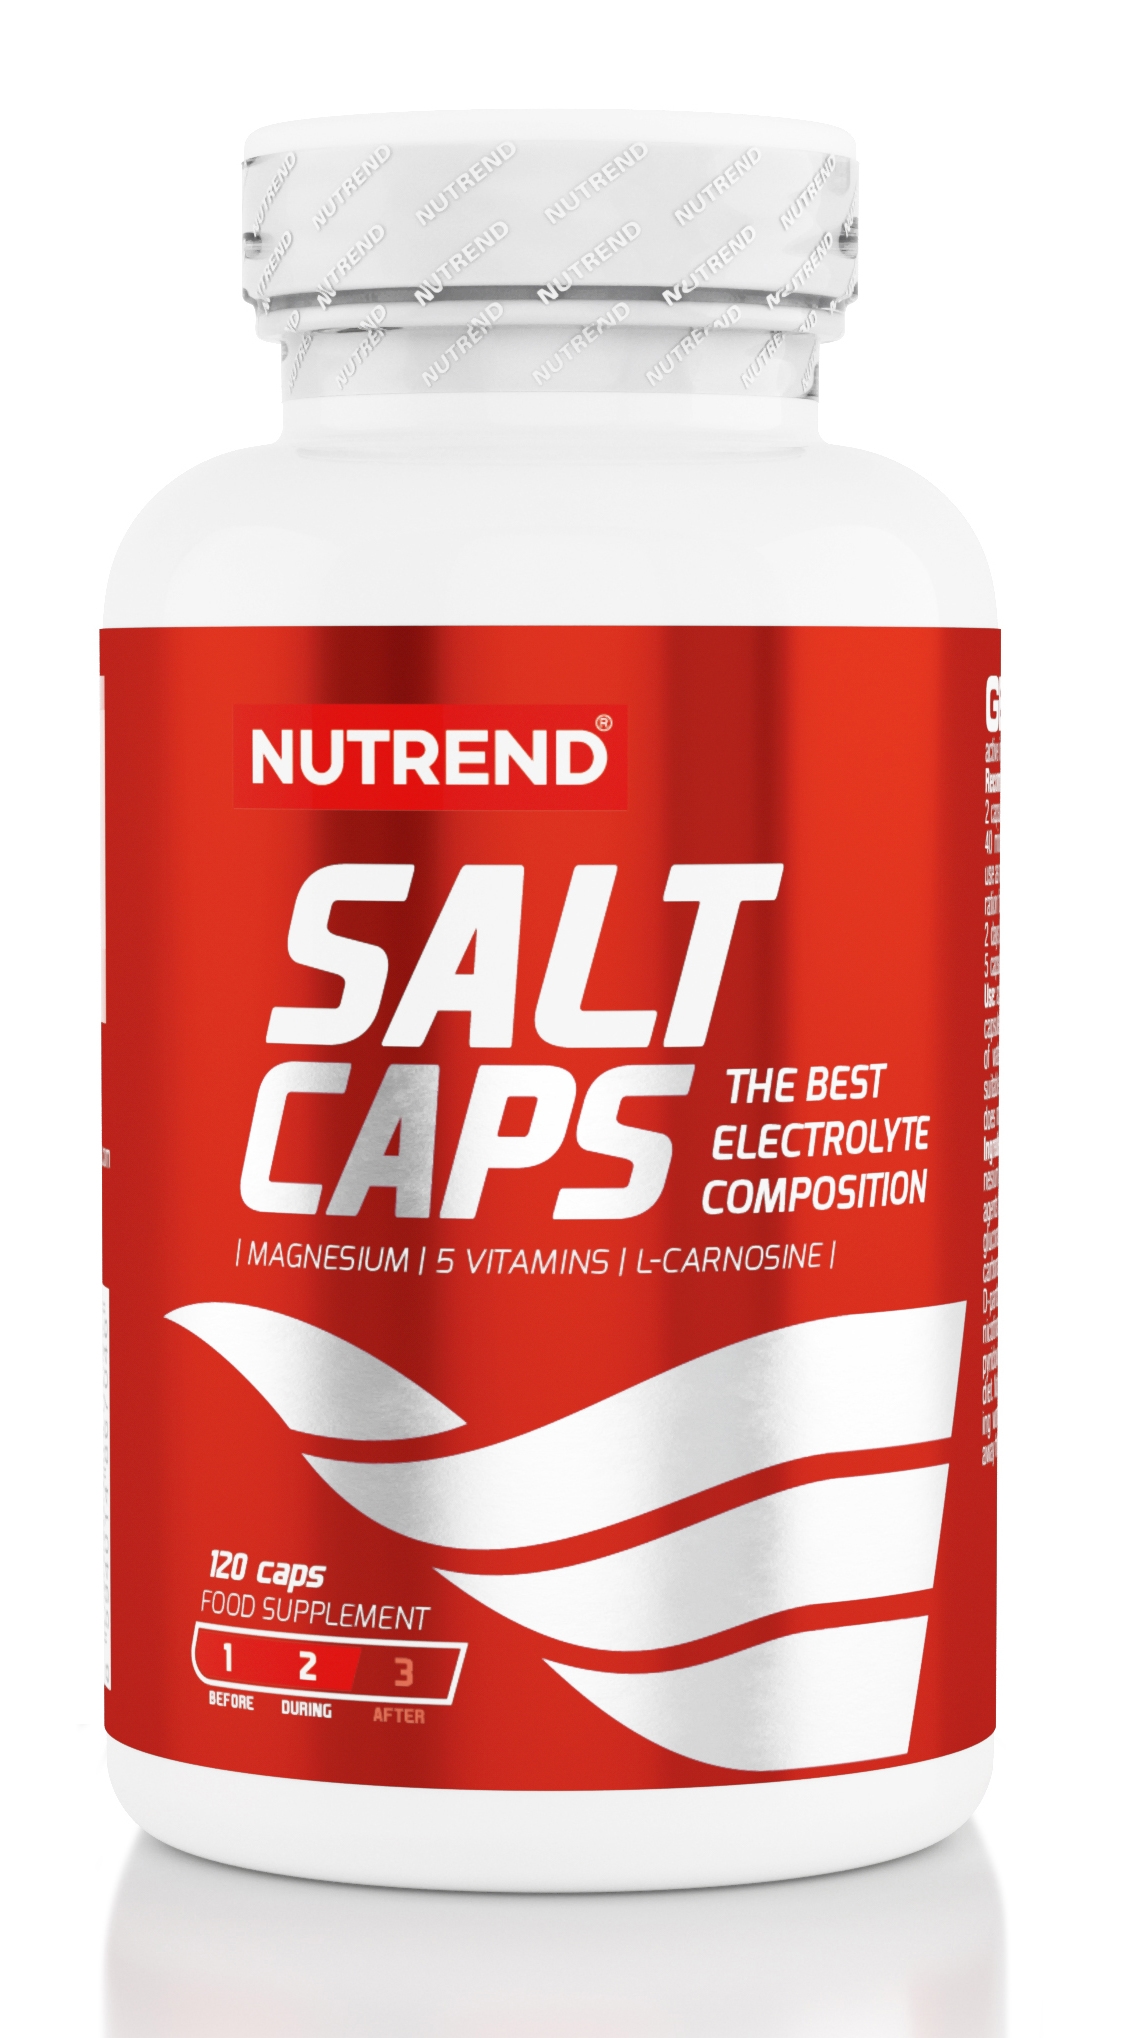 NUTREND SALT CAPS, 120 kapslí Typ: tablety a kapsle, určení: proti křečím, použití: před výkonem